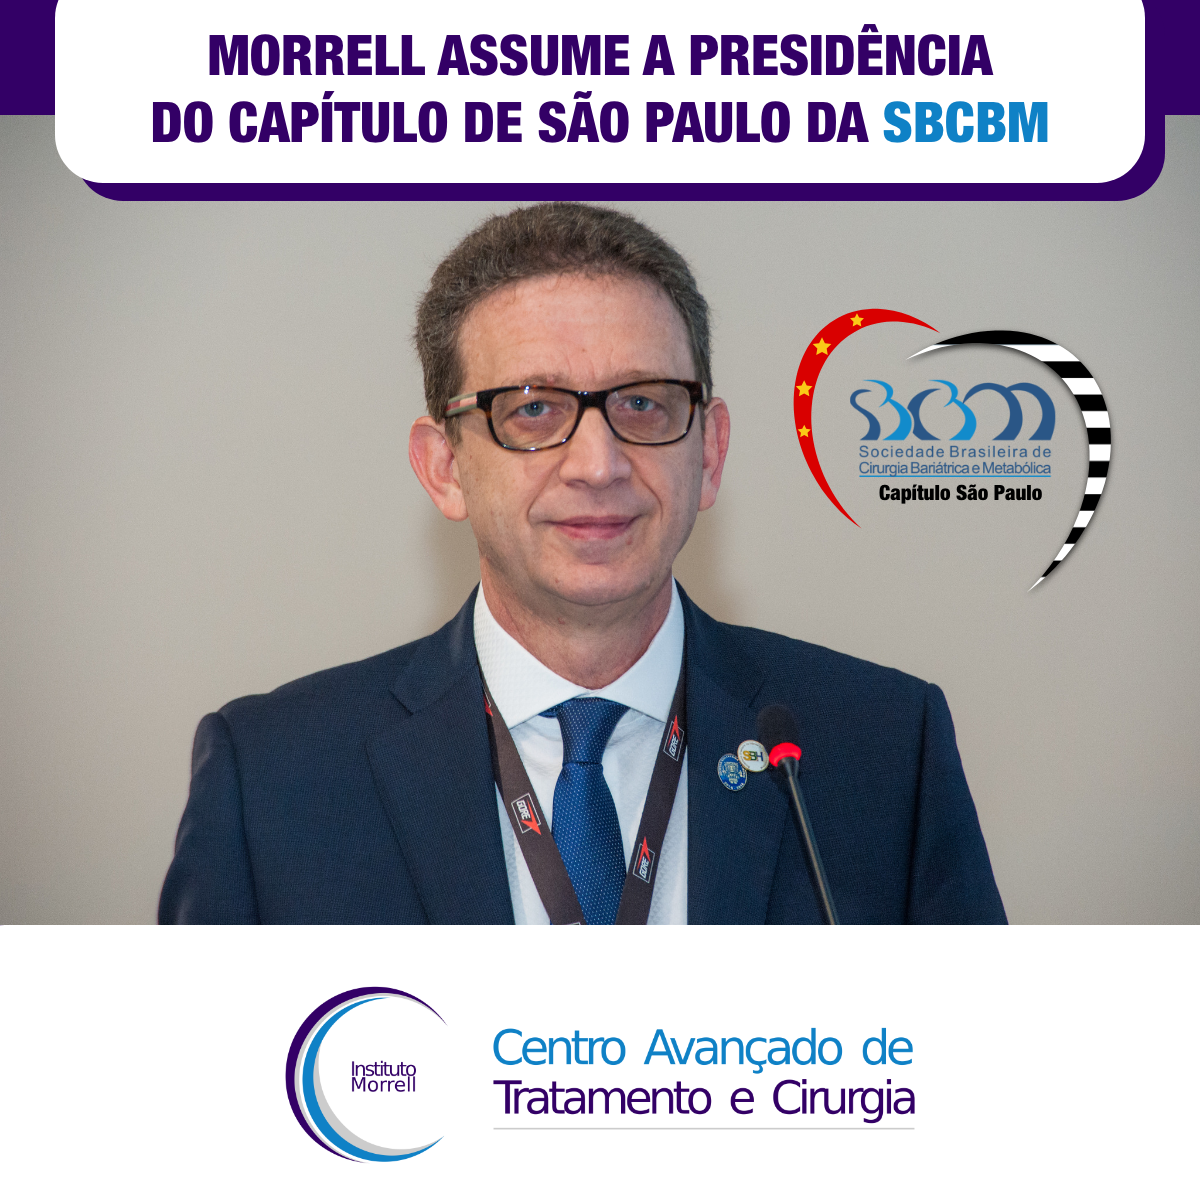 DR._MORRELL_RESPONDE_-_2019_-_MORRELL_ASSUME_A_PRESIDÊNCIA_DO_CAPÍTULO_DE_SÃO_PAULO_DA_SBCBM-1200x1200.png